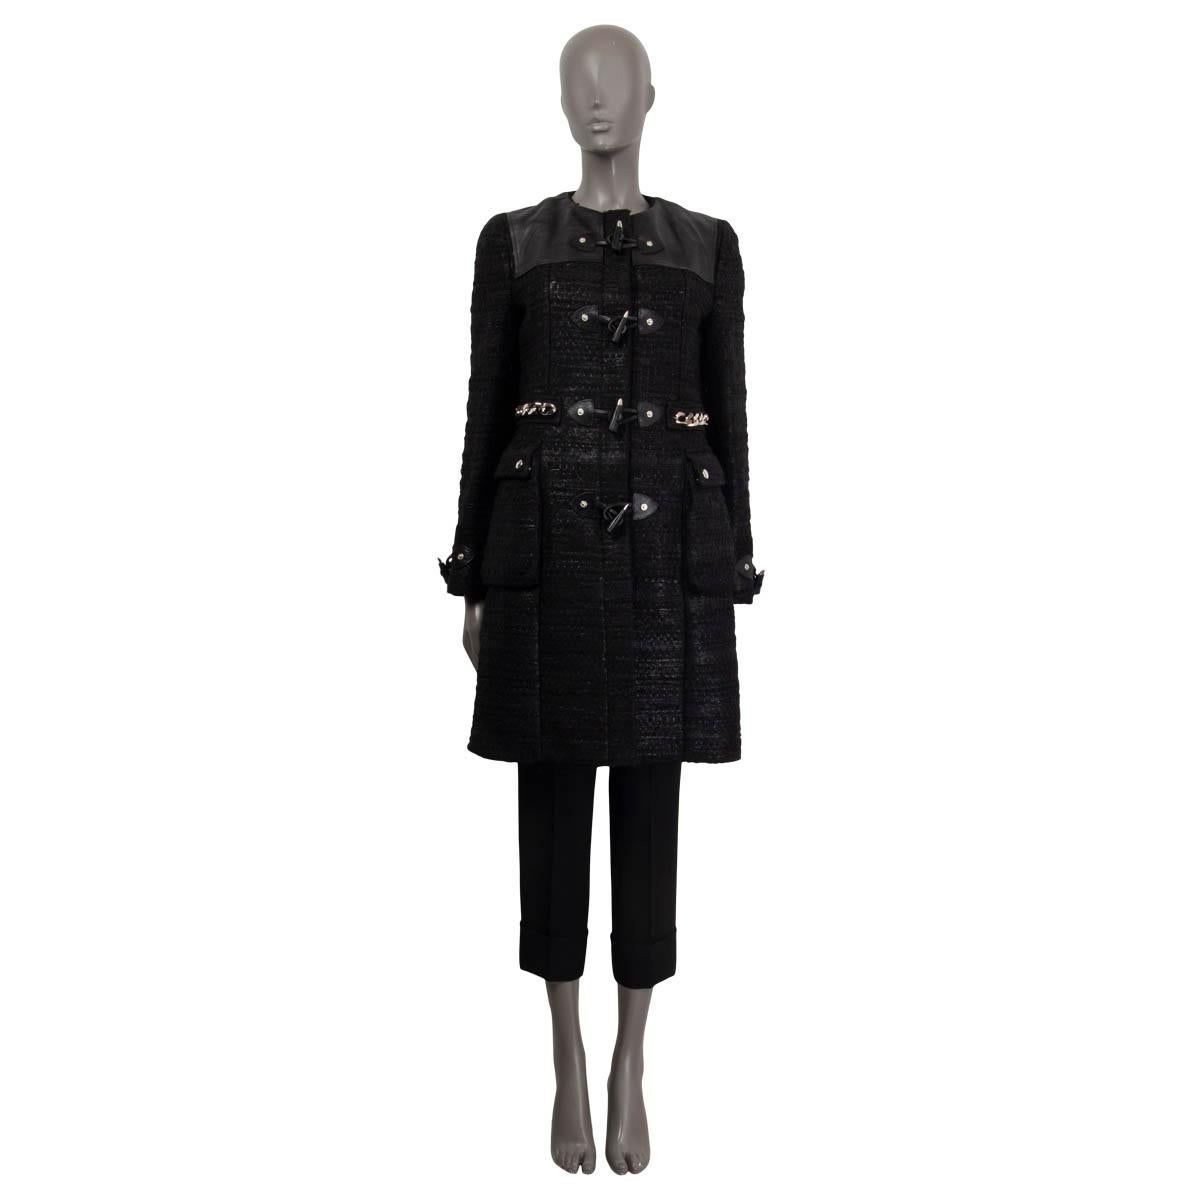 100% authentischer Dufflecoat von Givenchy aus schwarzem Acryl (87%) und Wolle (13%). Mit Ledereinsätzen an den Schultern, Knebelmanschetten und zwei aufgesetzten Taschen mit Knöpfen vorne. Mit einer silbernen Kette um die Taille verziert. Wird mit